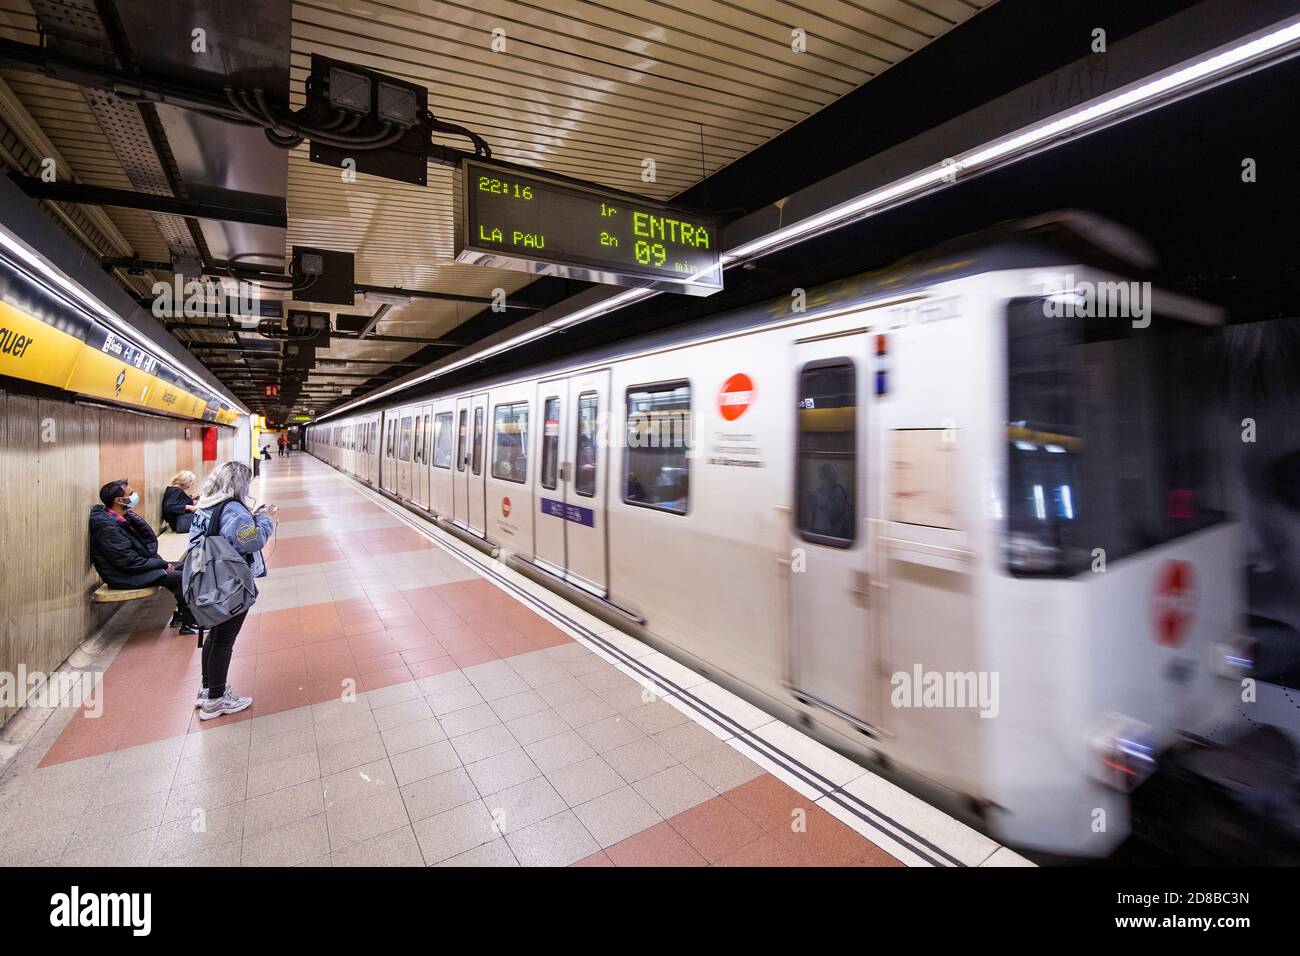 2020.10.28. Barcelone, Espagne. 22:15 h. Quelques personnes attendent pour prendre le métro pendant les premières heures du couvre-feu de la journée. © Aitor Rodero. Banque D'Images